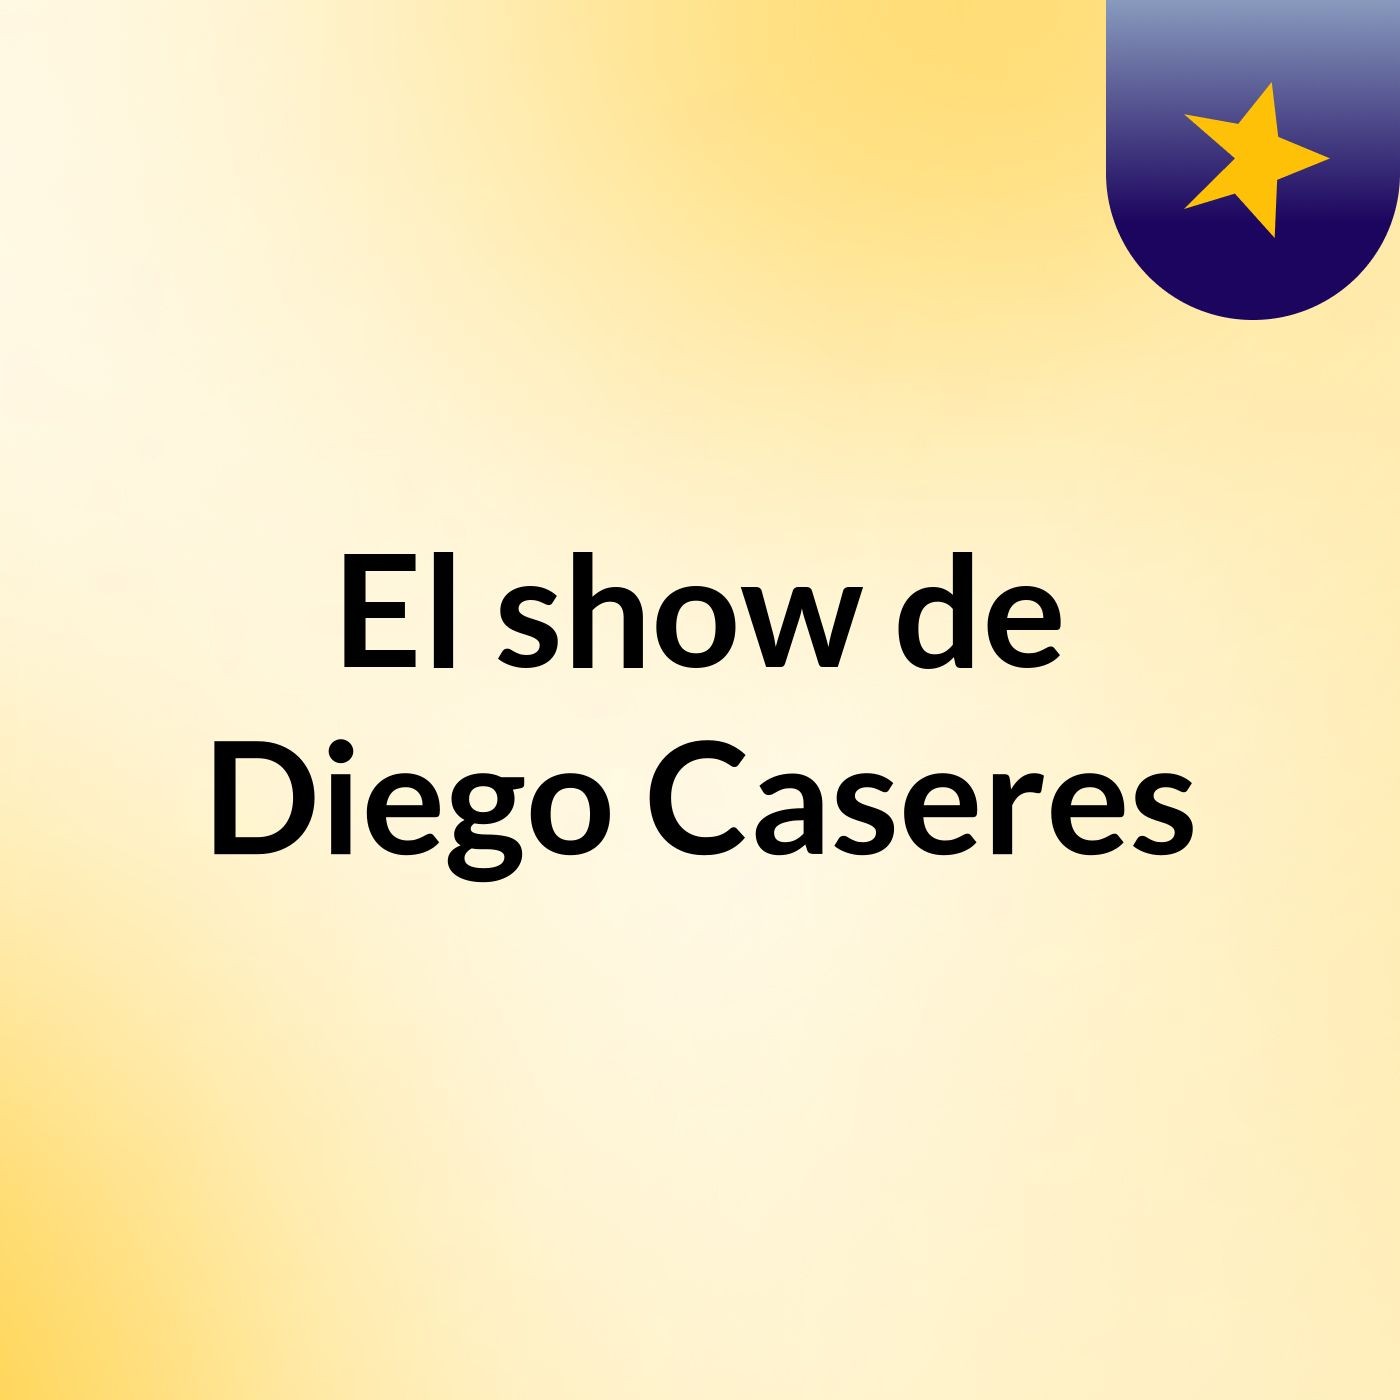 El show de Diego Caseres